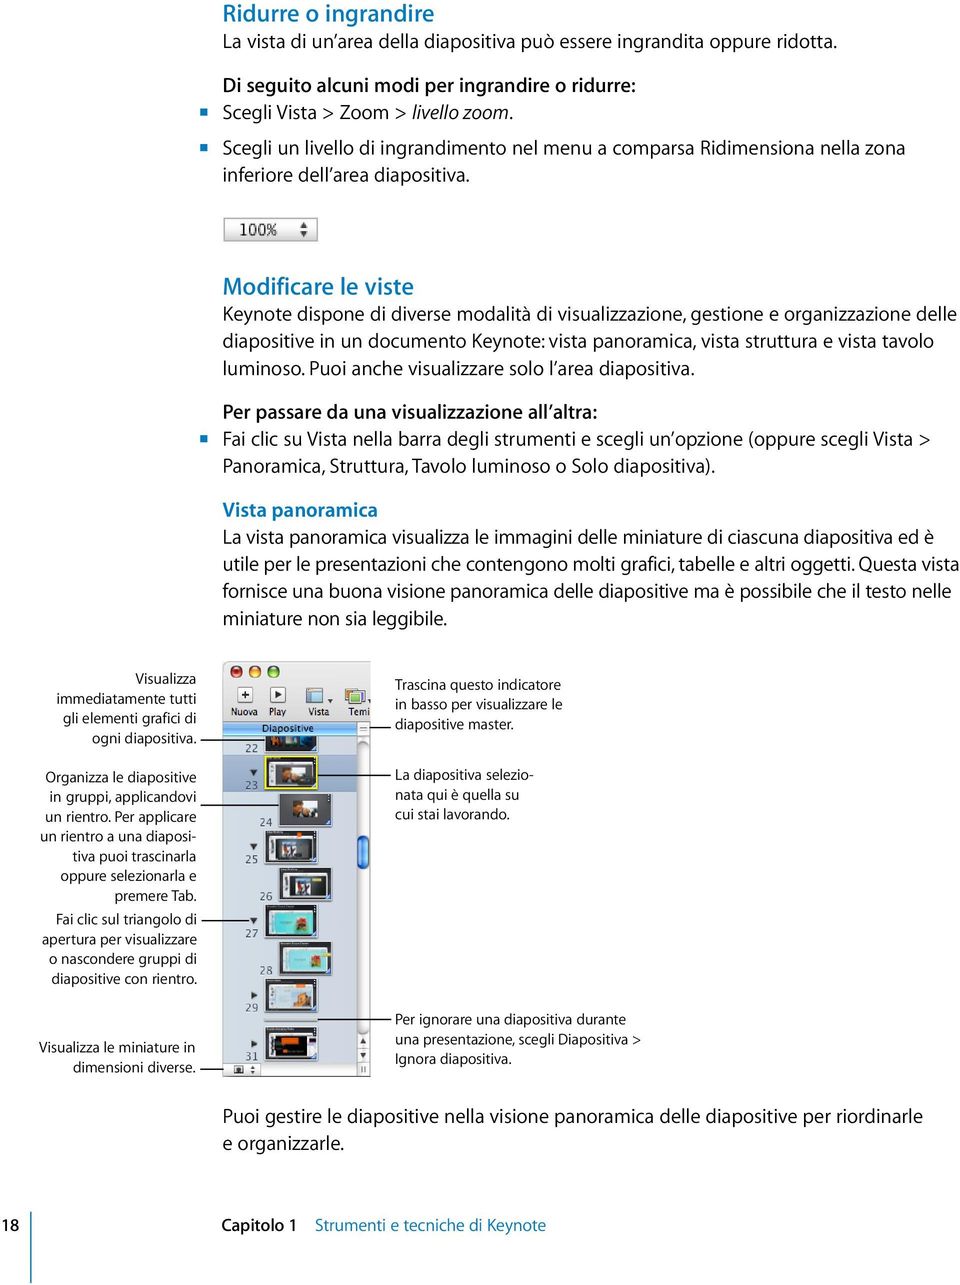 Modificare le viste Keynote dispone di diverse modalità di visualizzazione, gestione e organizzazione delle diapositive in un documento Keynote: vista panoramica, vista struttura e vista tavolo